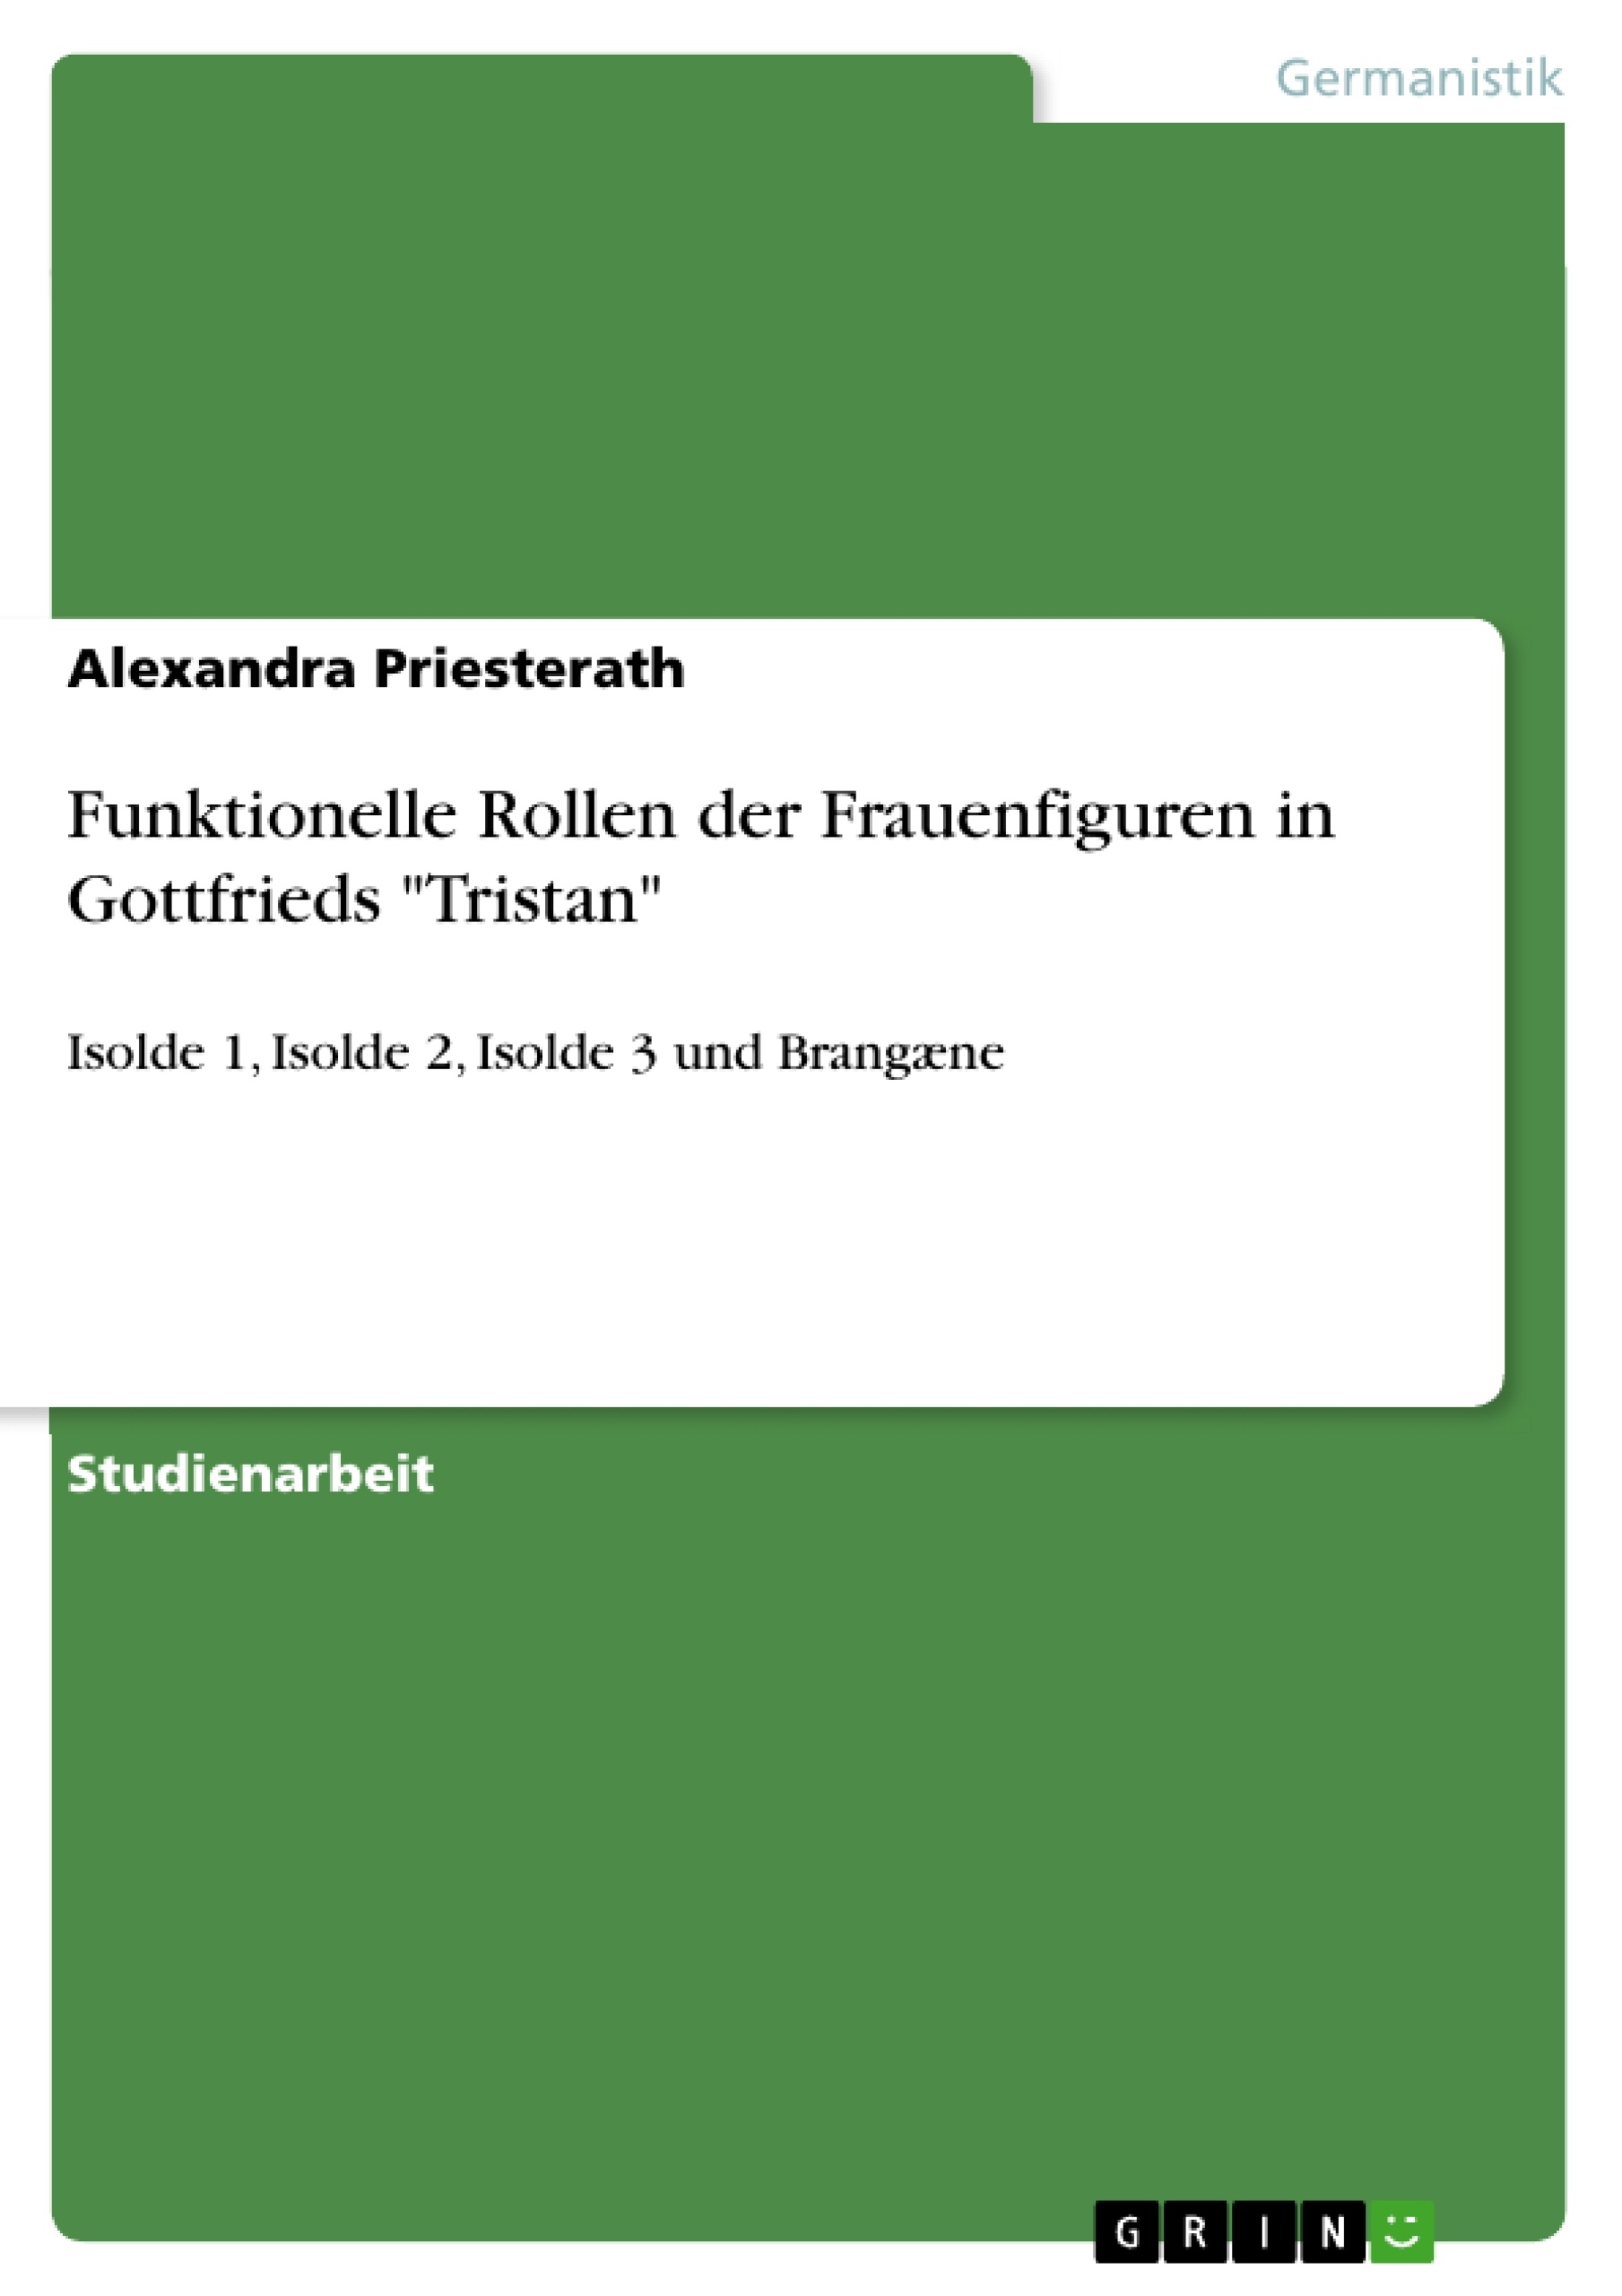 Title: Funktionelle Rollen der Frauenfiguren in Gottfrieds "Tristan"